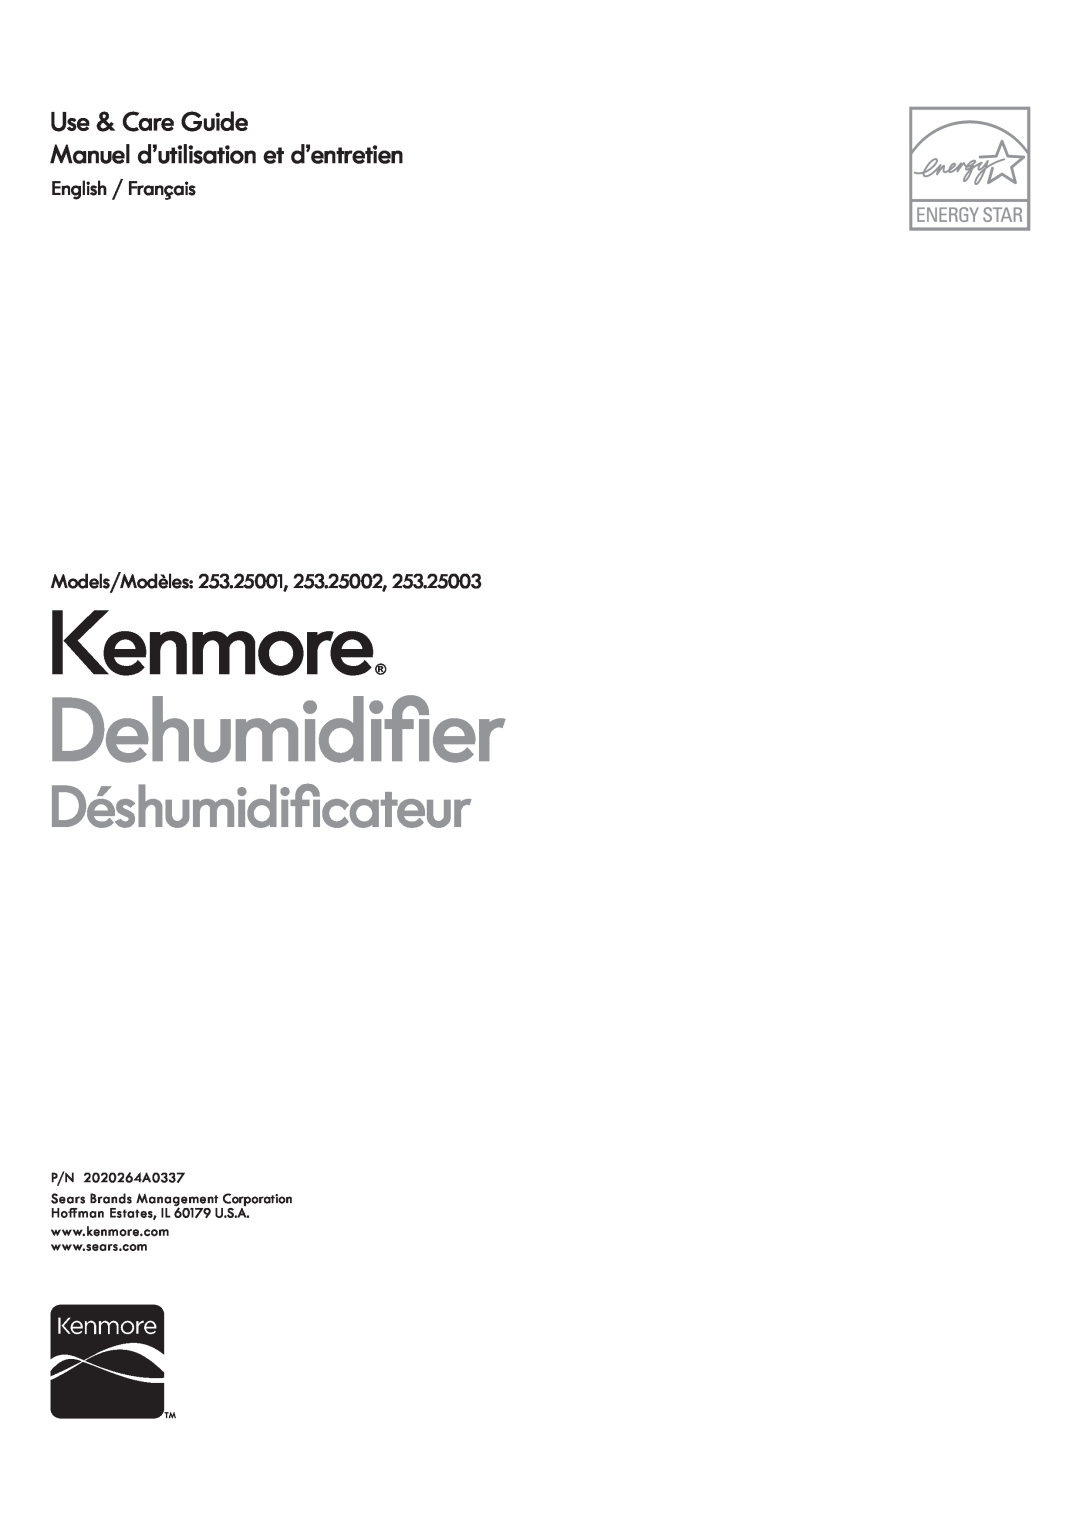 Kenmore 253.25003, 253.25002 manuel dutilisation Kenmore HKXPLGLoHU, ÑVKXPLGLoFDWHXU, Use & Care Guide, English / Français 